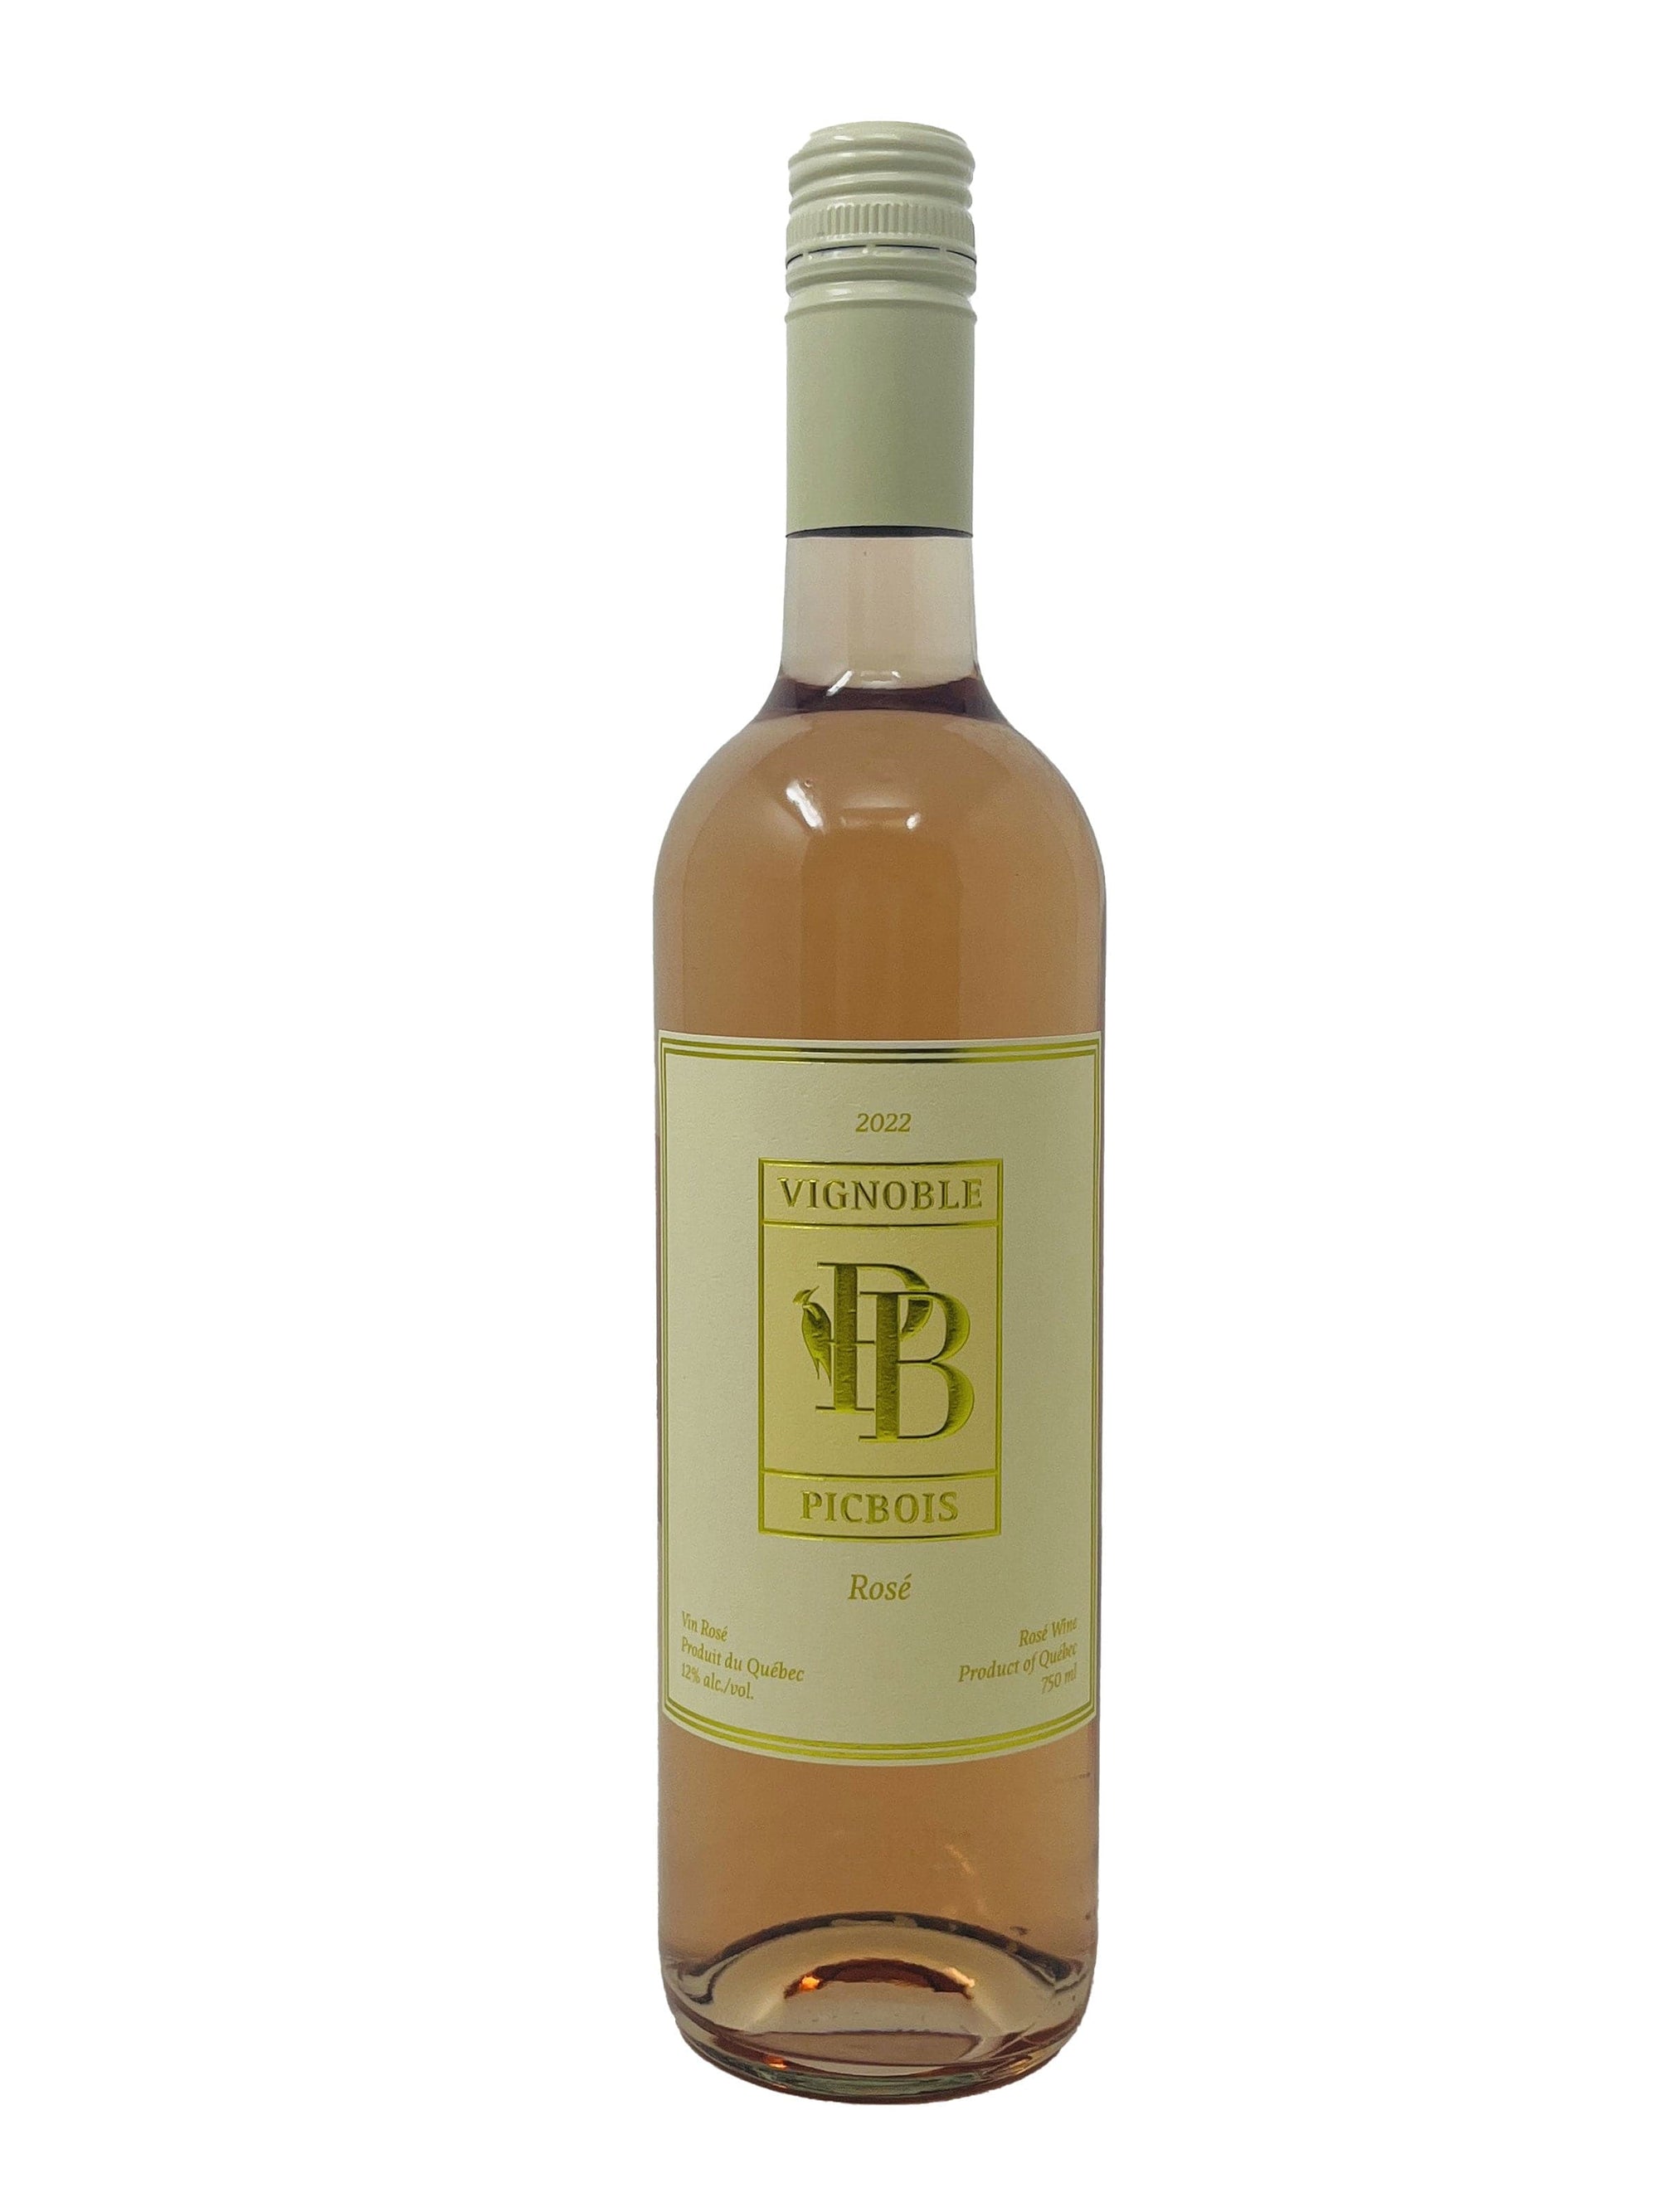 Vignoble PicBois vin Rosé 2022- Vin rosé du vignoble PicBois